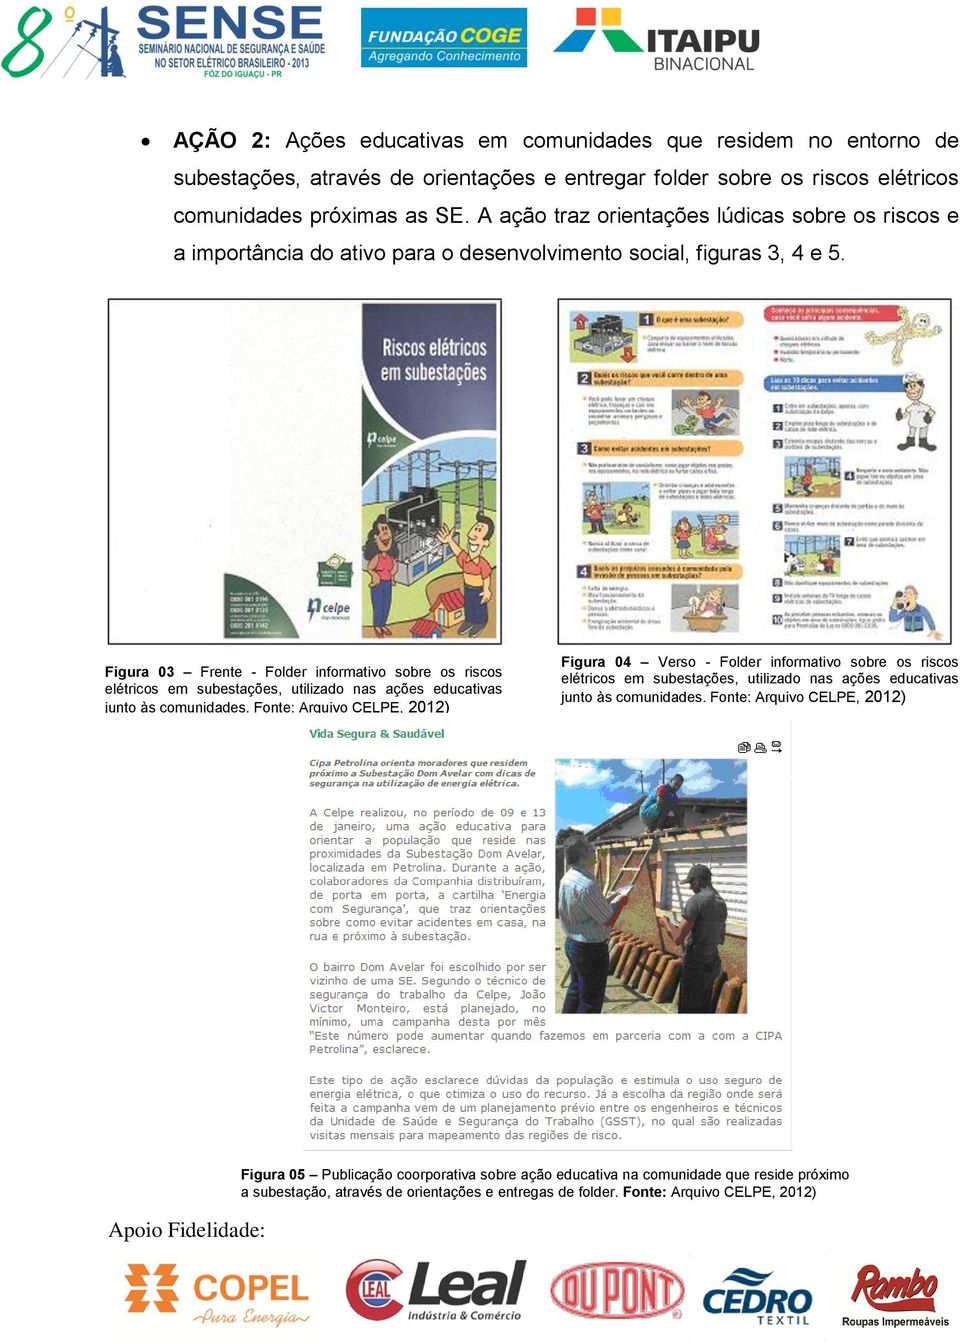 Figura 03 Frente - Folder informativo sobre os riscos elétricos em subestações, utilizado nas ações educativas junto às comunidades.